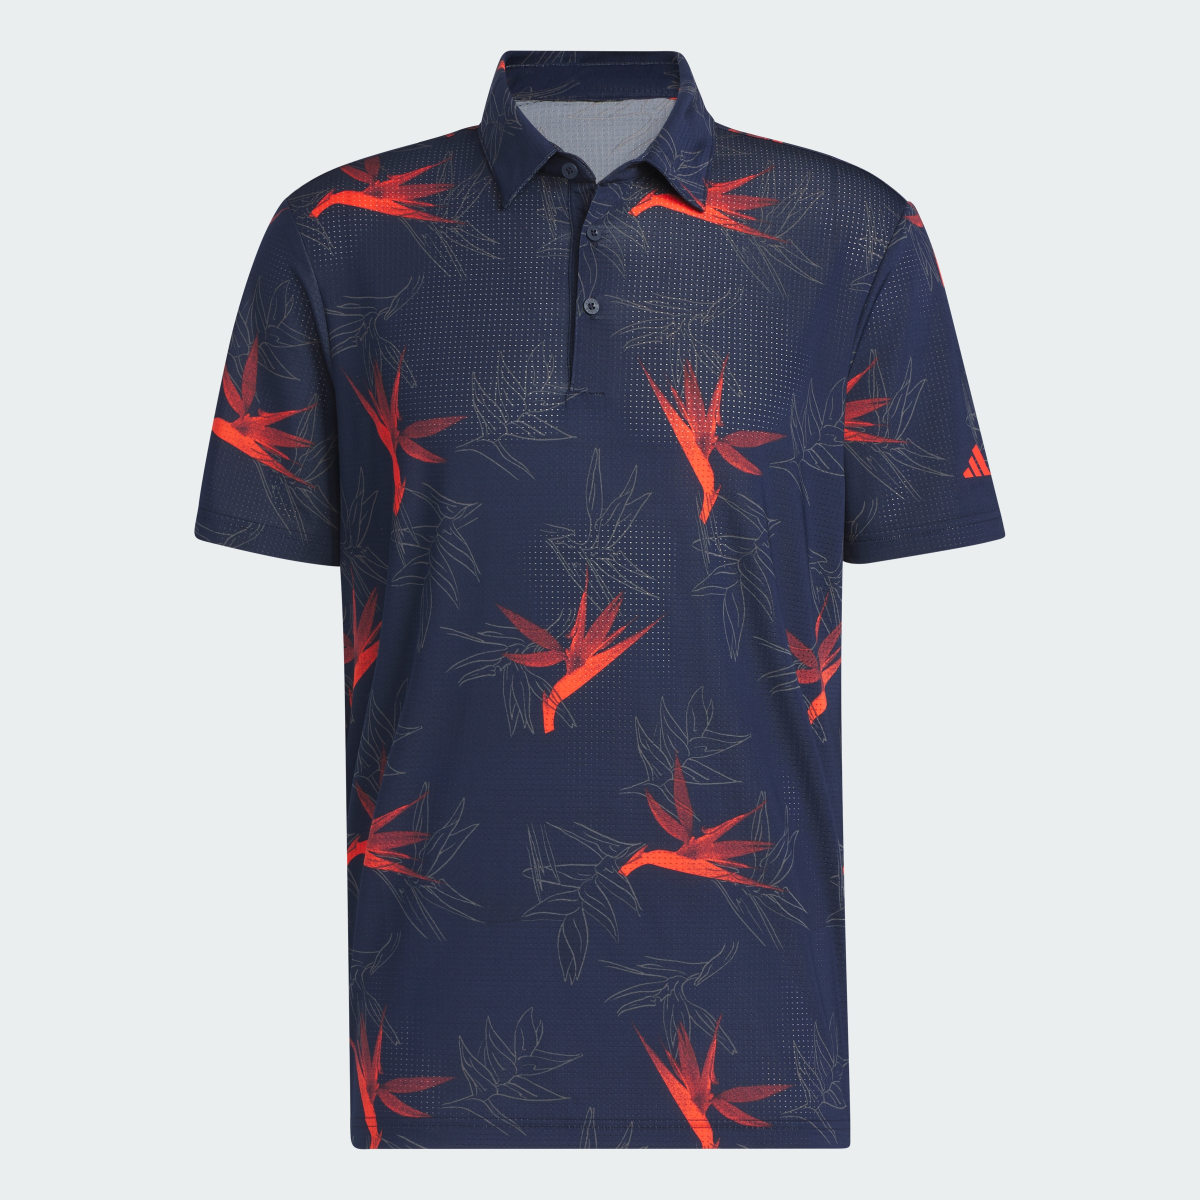 Adidas Oasis Mesh Golf Polo Shirt. 5